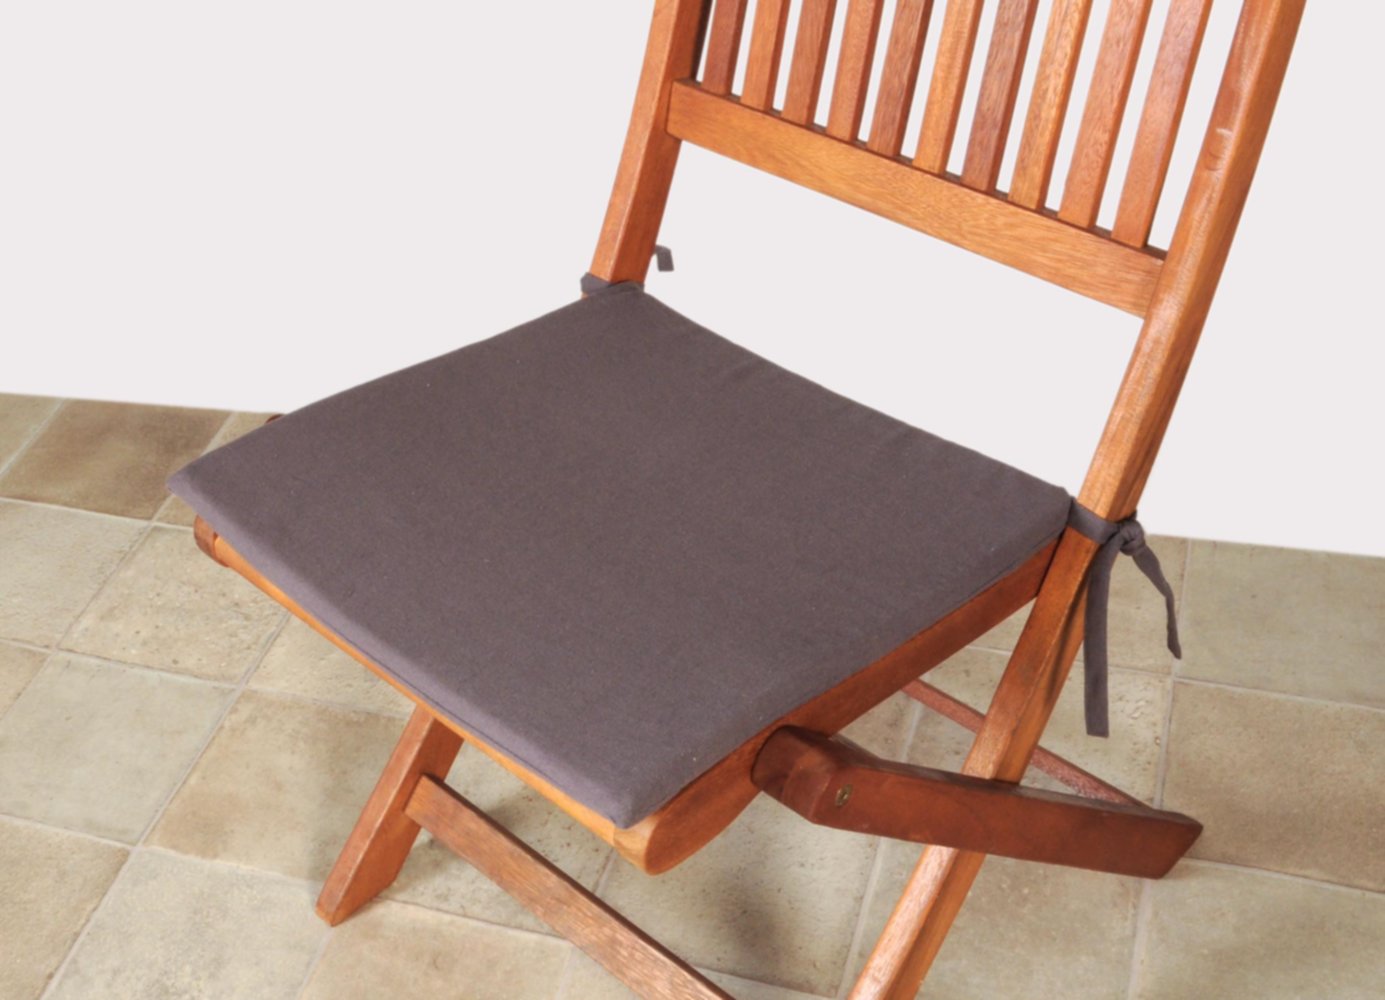 Galette de chaise fine 40x40 cm anthracite